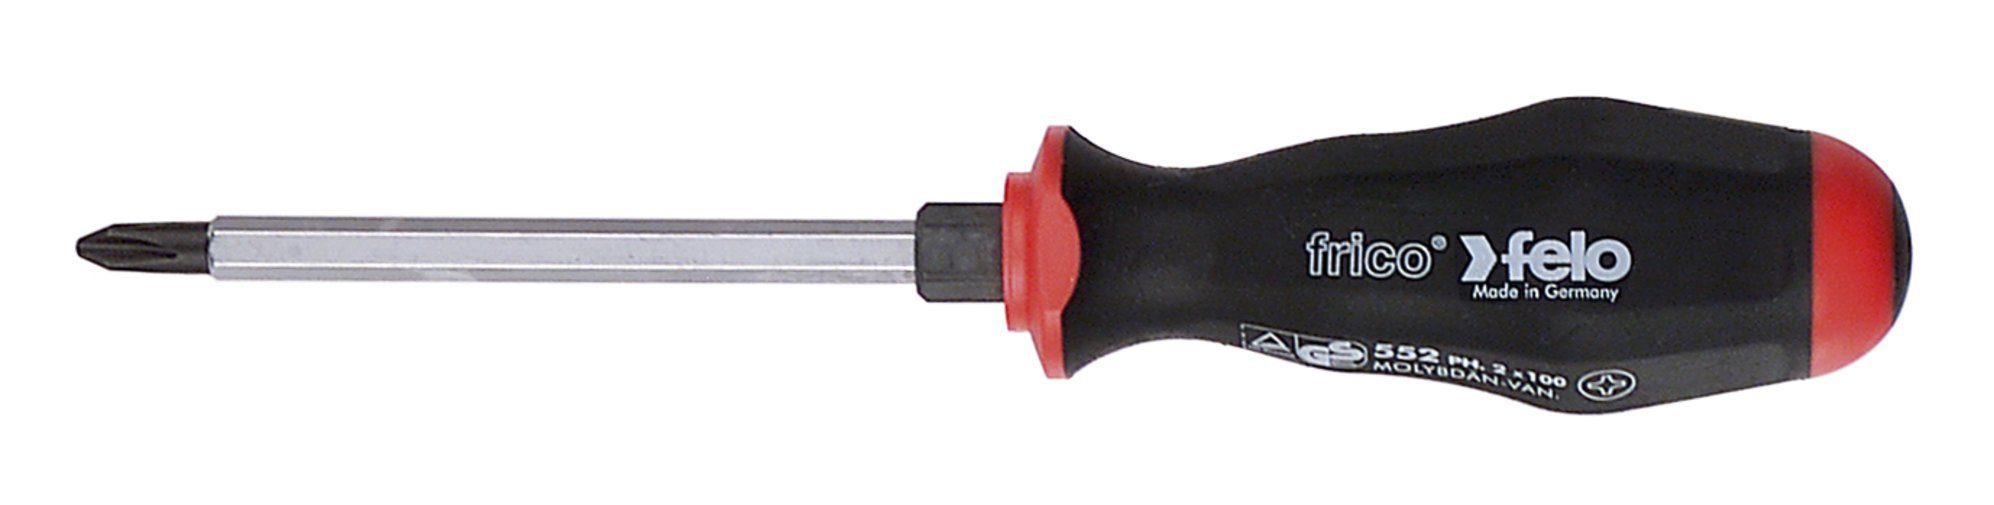 Felo Schraubendreher Felo Schraubendreher mit 2-Komponenten-Griff, durchgehender Klinge und Schlagkappe PH 1